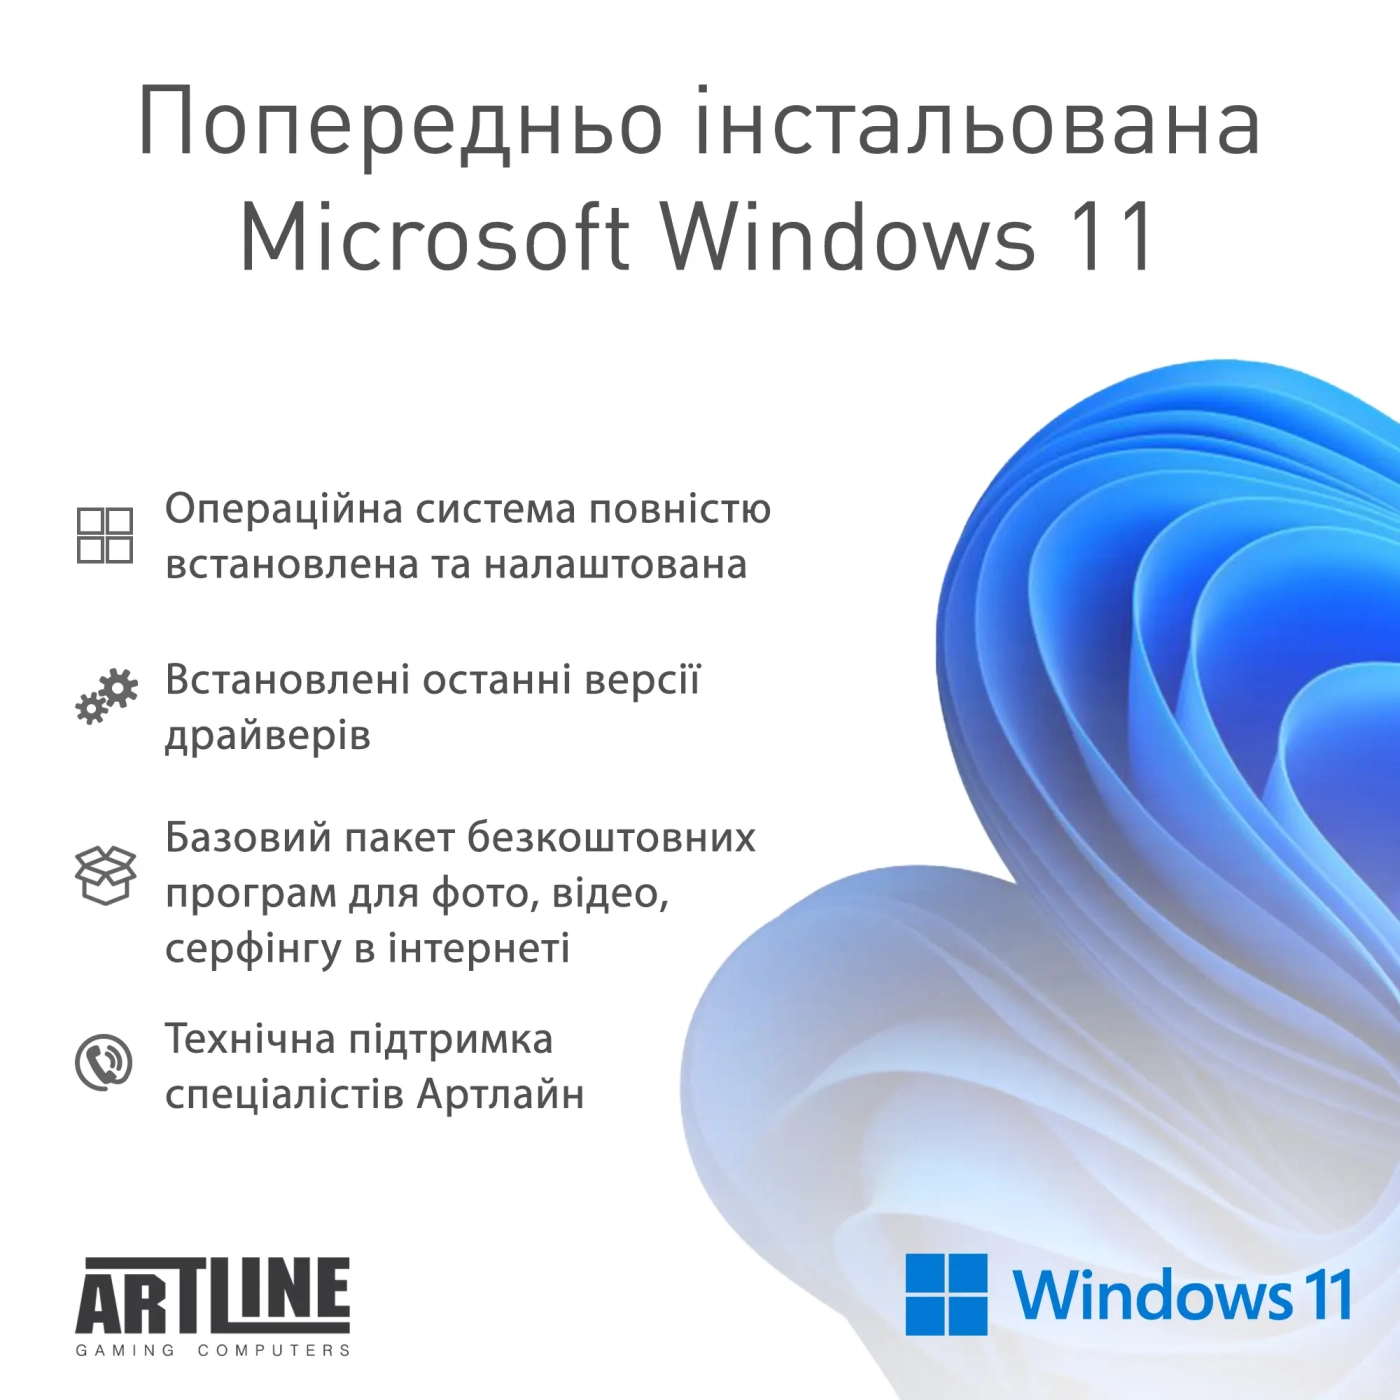 Купить Компьютер ARTLINE Gaming D31 Windows 11 Home (D31v22Win) - фото 12